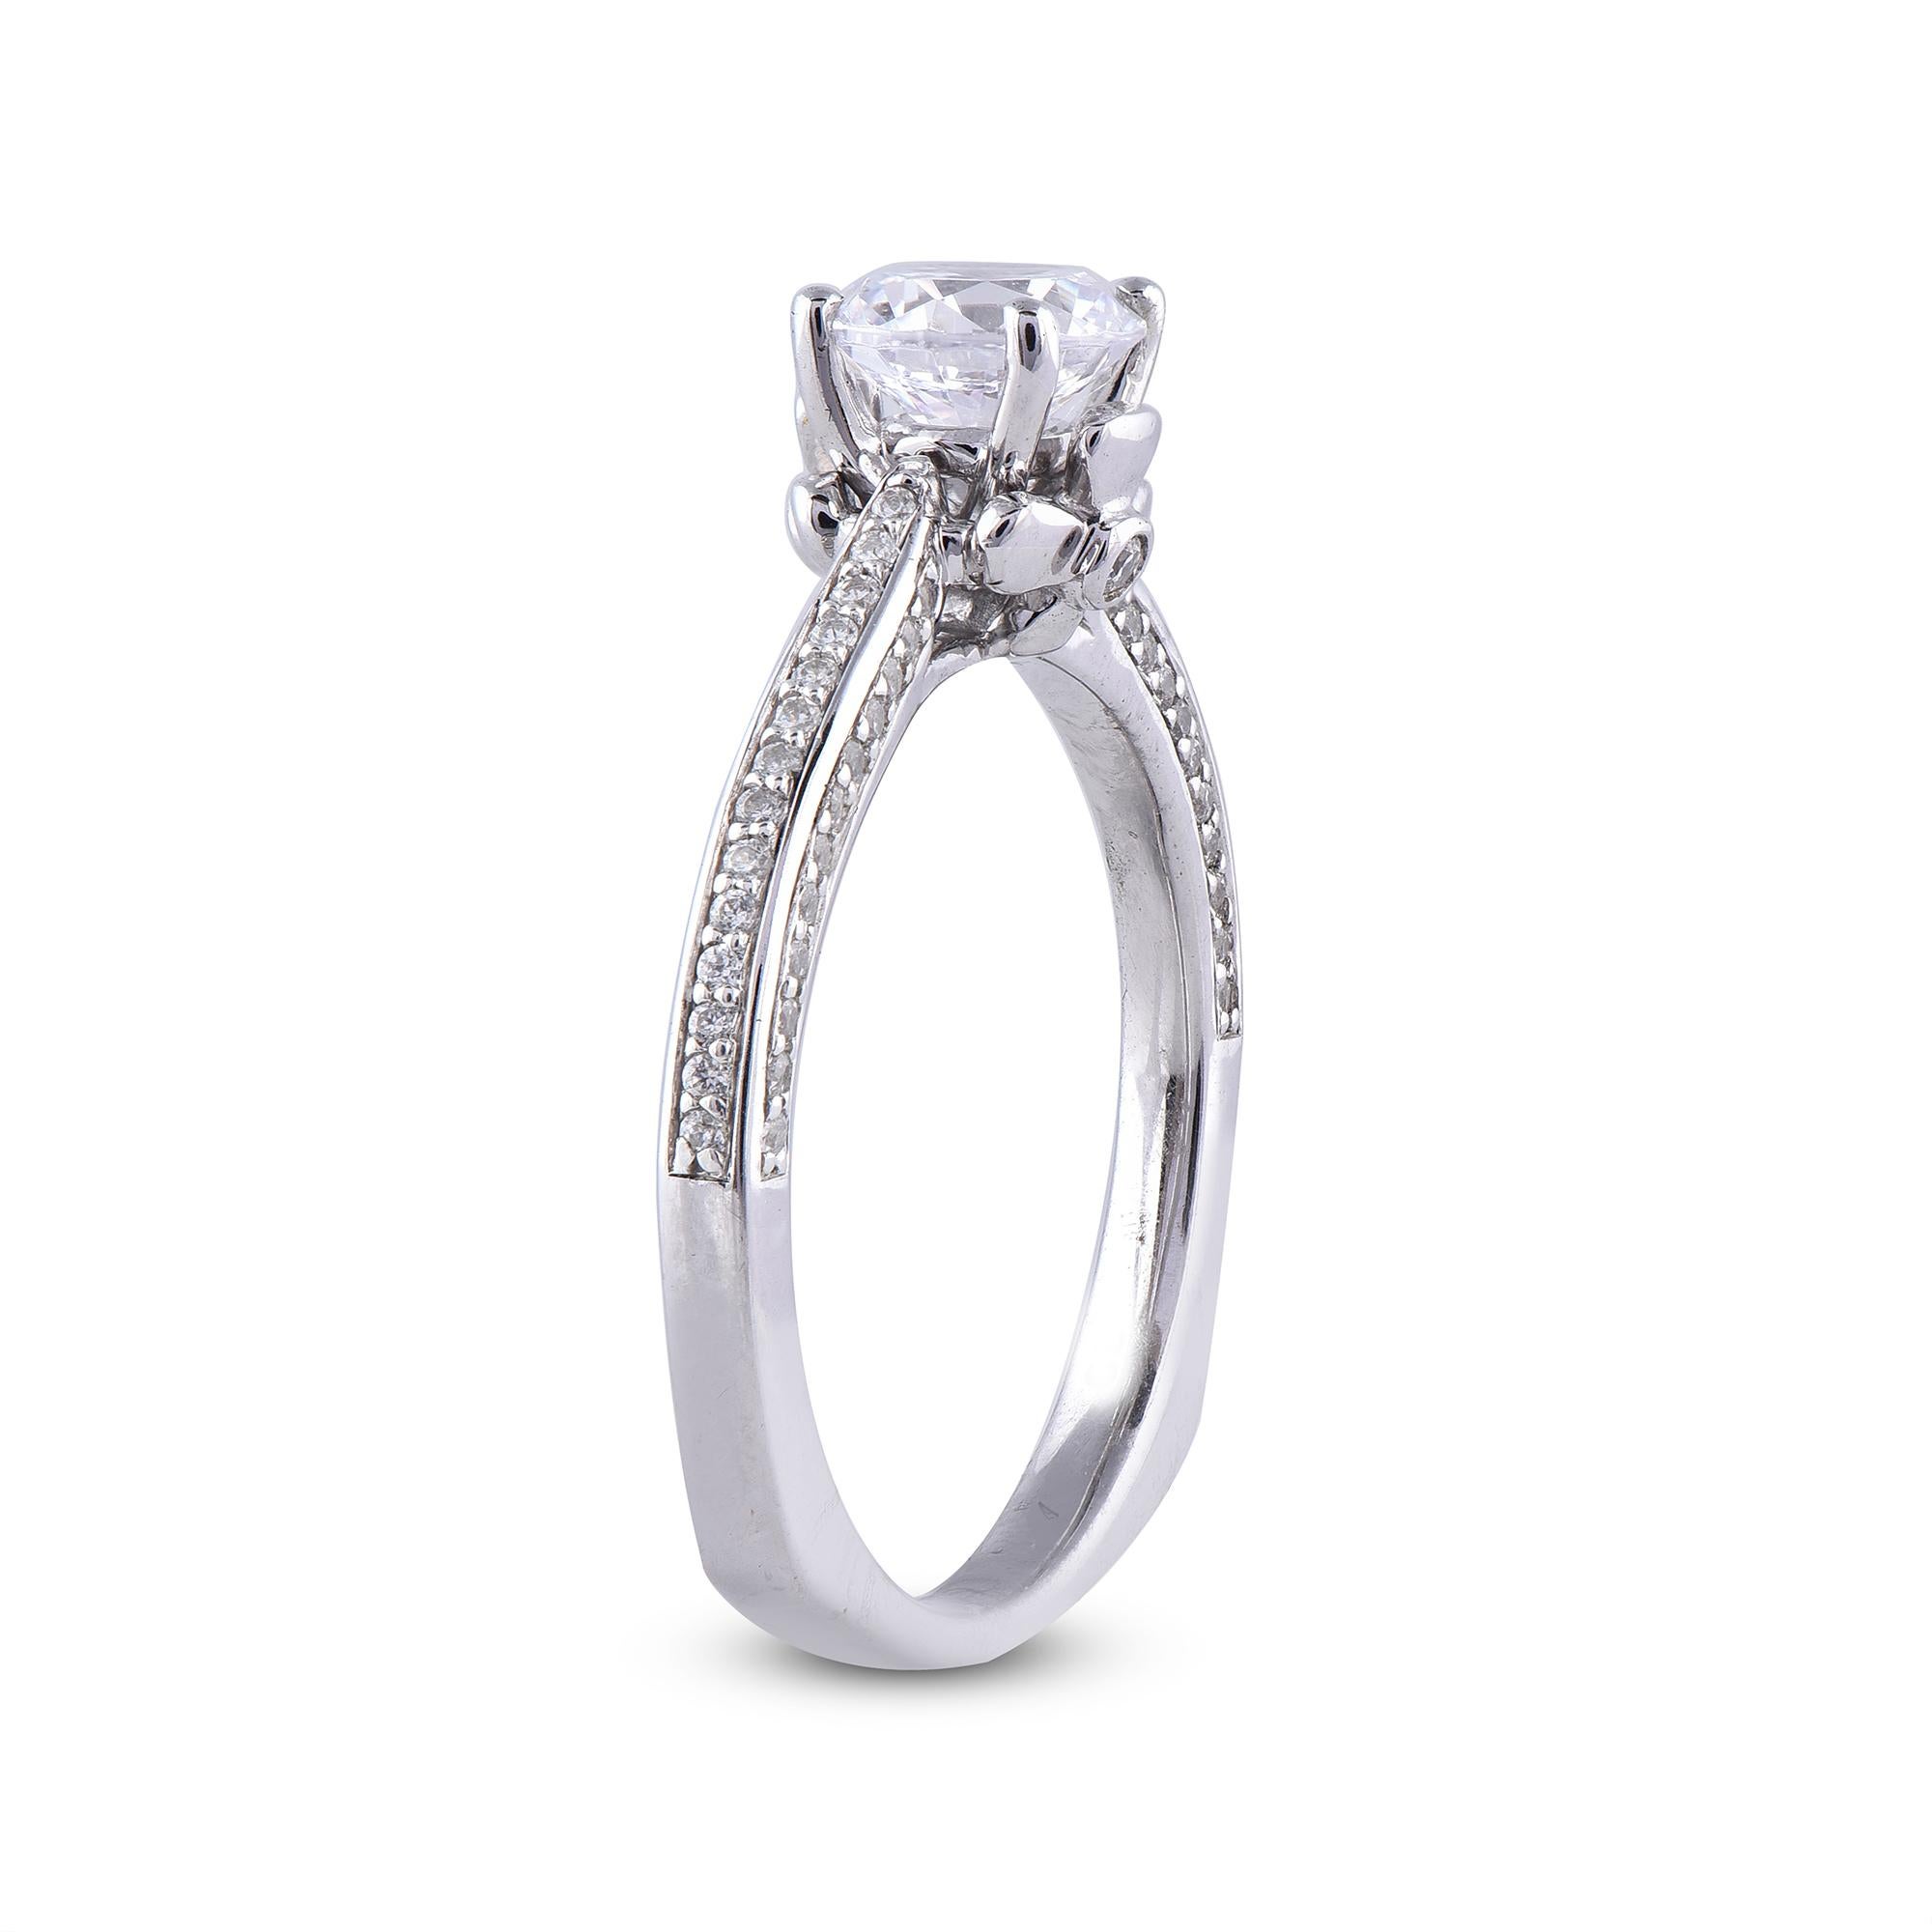 Dieser wirklich exquisite Ring mit einem Mittelstein von 0,80 ct und einem Diamantring mit 0,20 ct an der Innenseite des Schafts wird wegen der ihm innewohnenden klassischen Schönheit und Eleganz sicher bewundert werden. Das Gesamtgewicht der